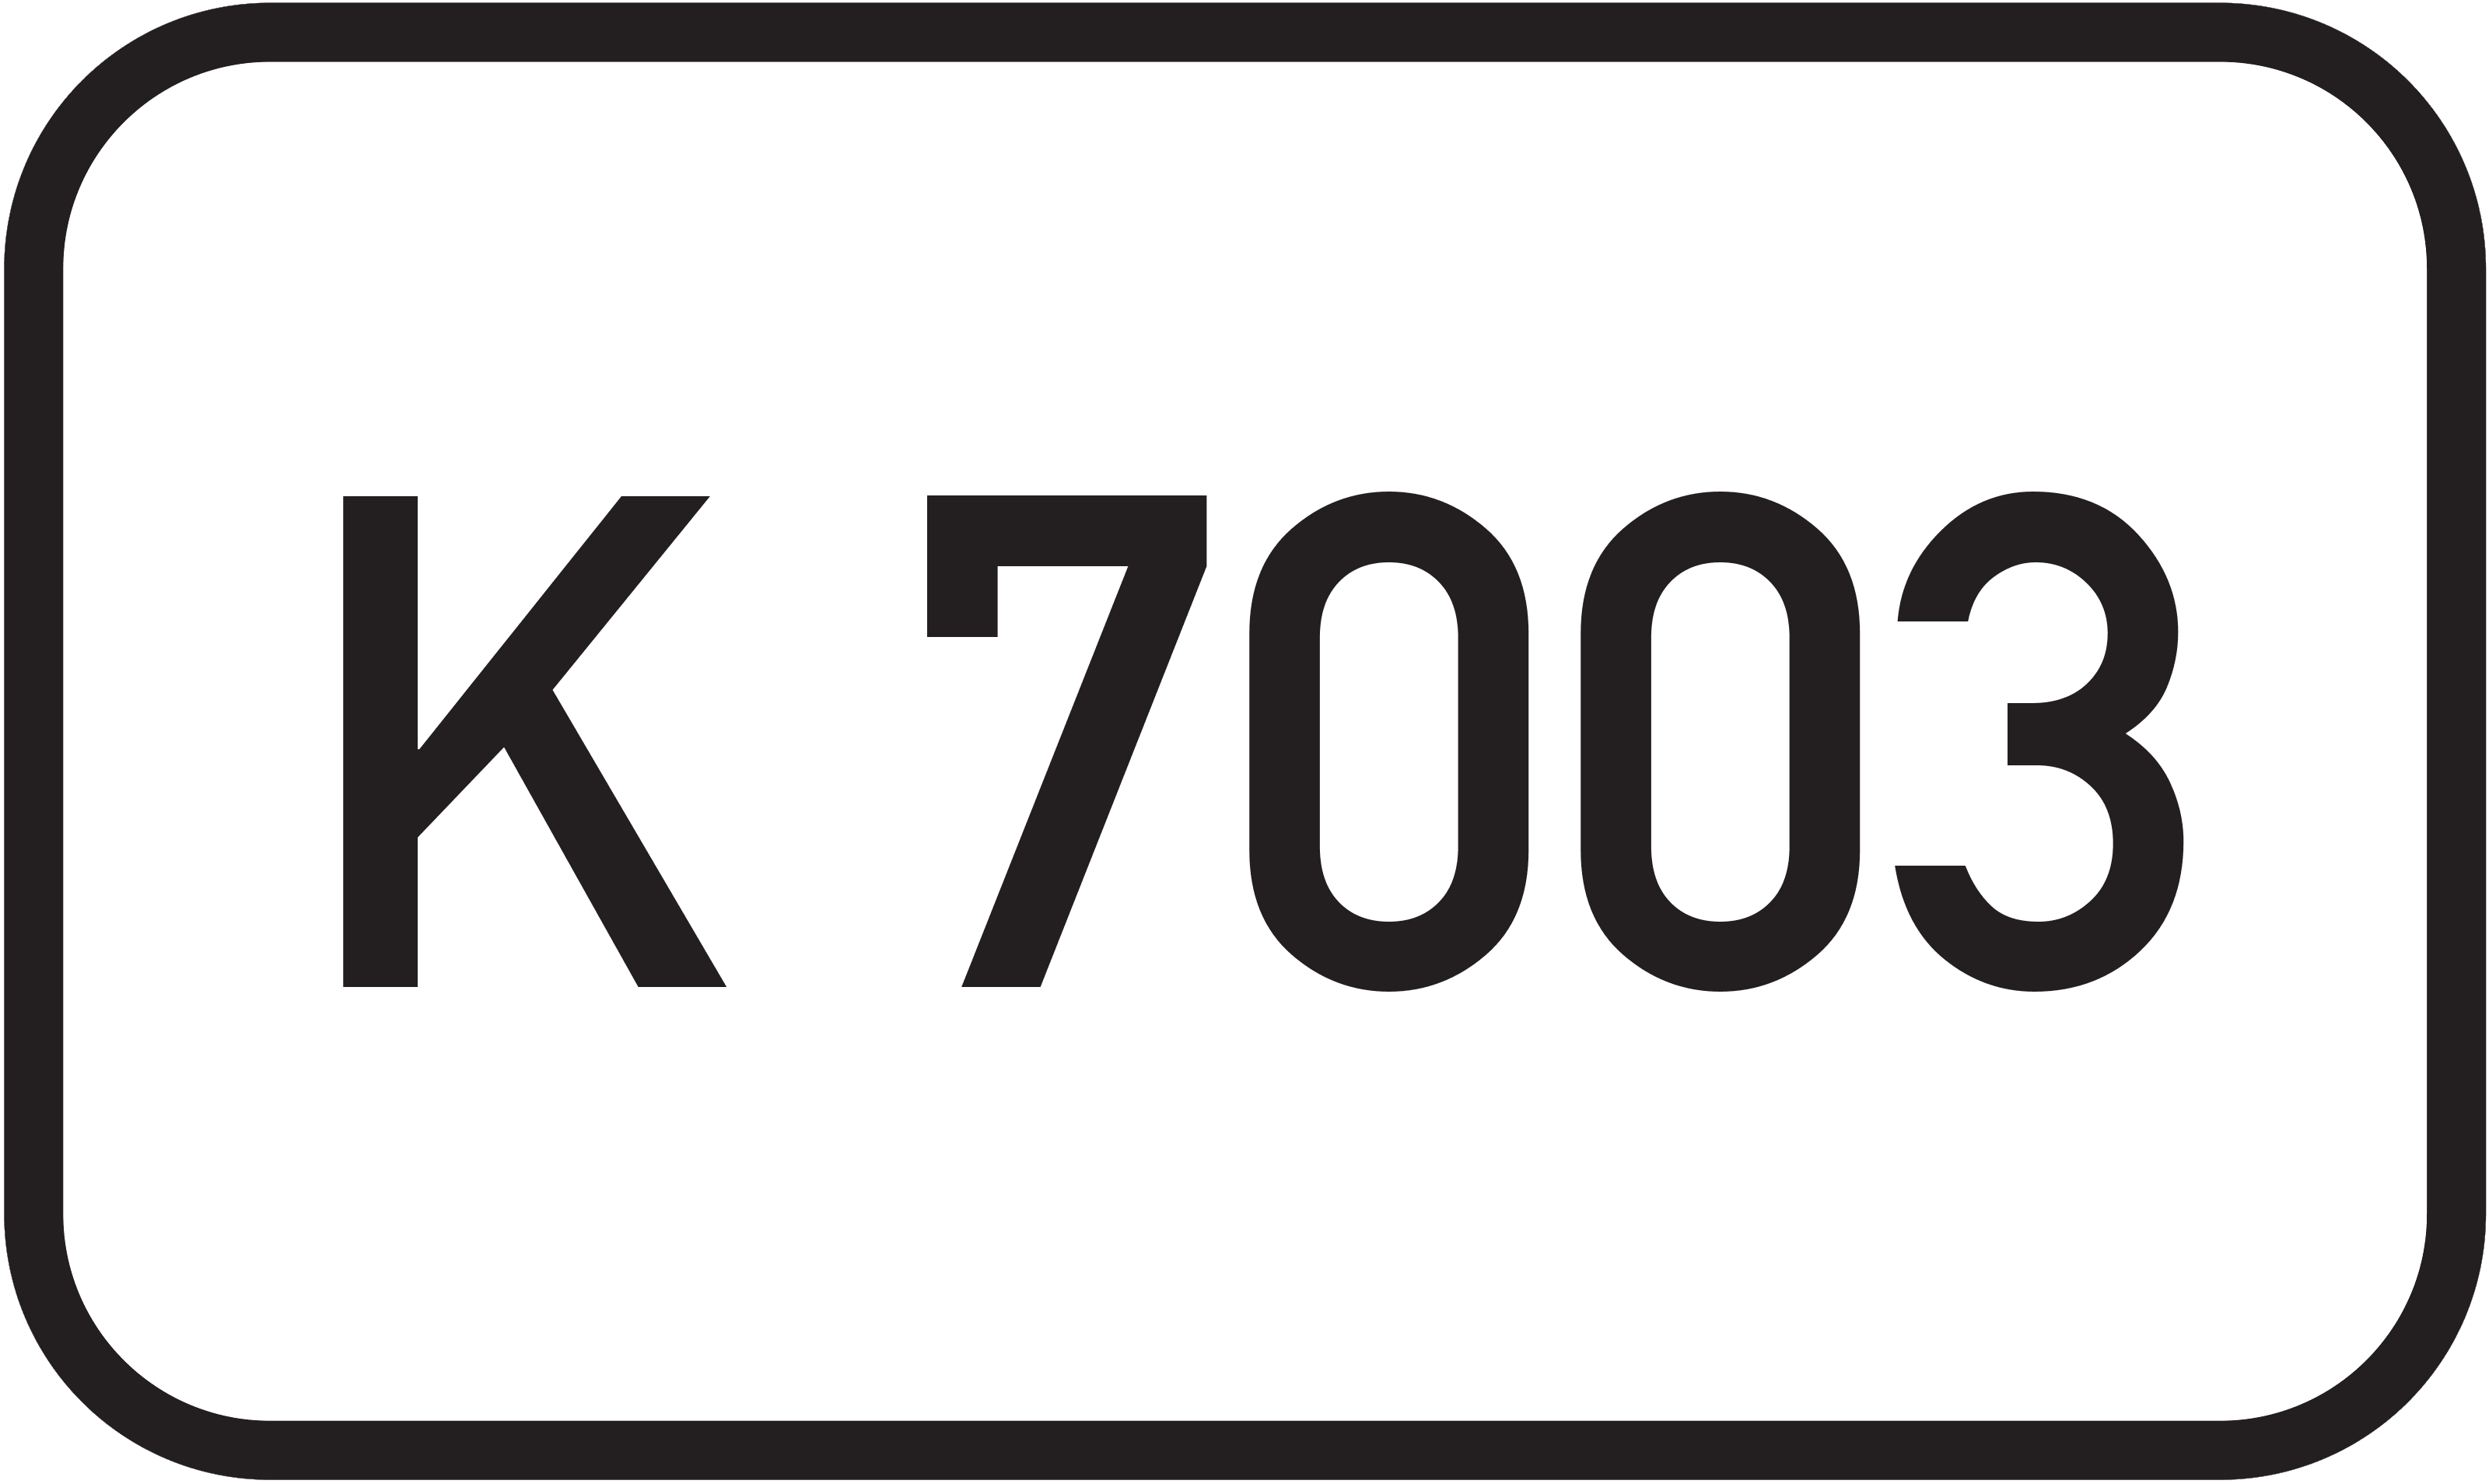 Bundesstraße K 7003